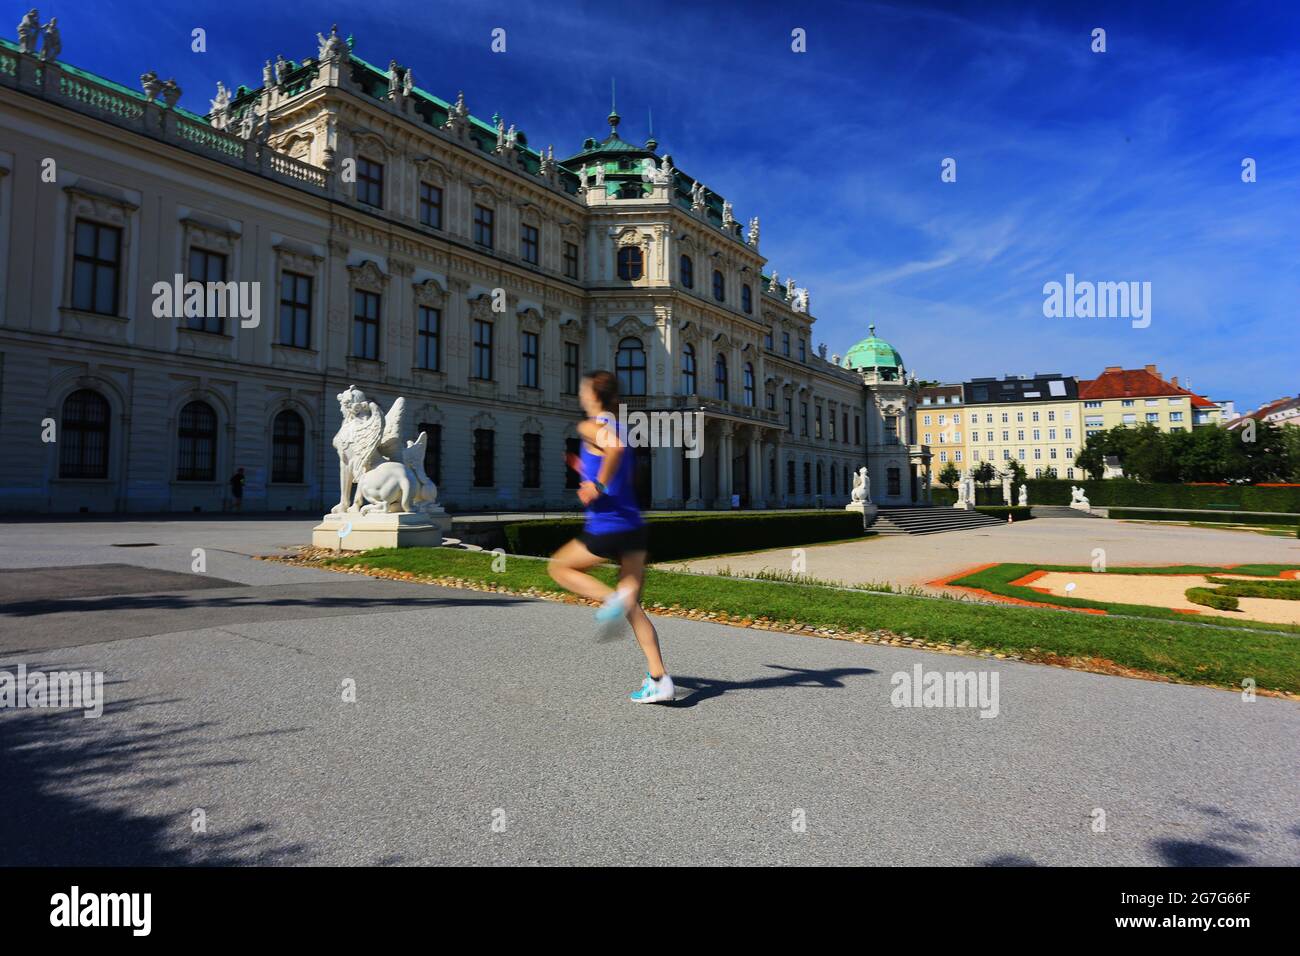 Wien, Architektur, das Barockes Schloss Belvedere ist das meistbesuchtes Kunstmuseum Österreichs Stock Photo